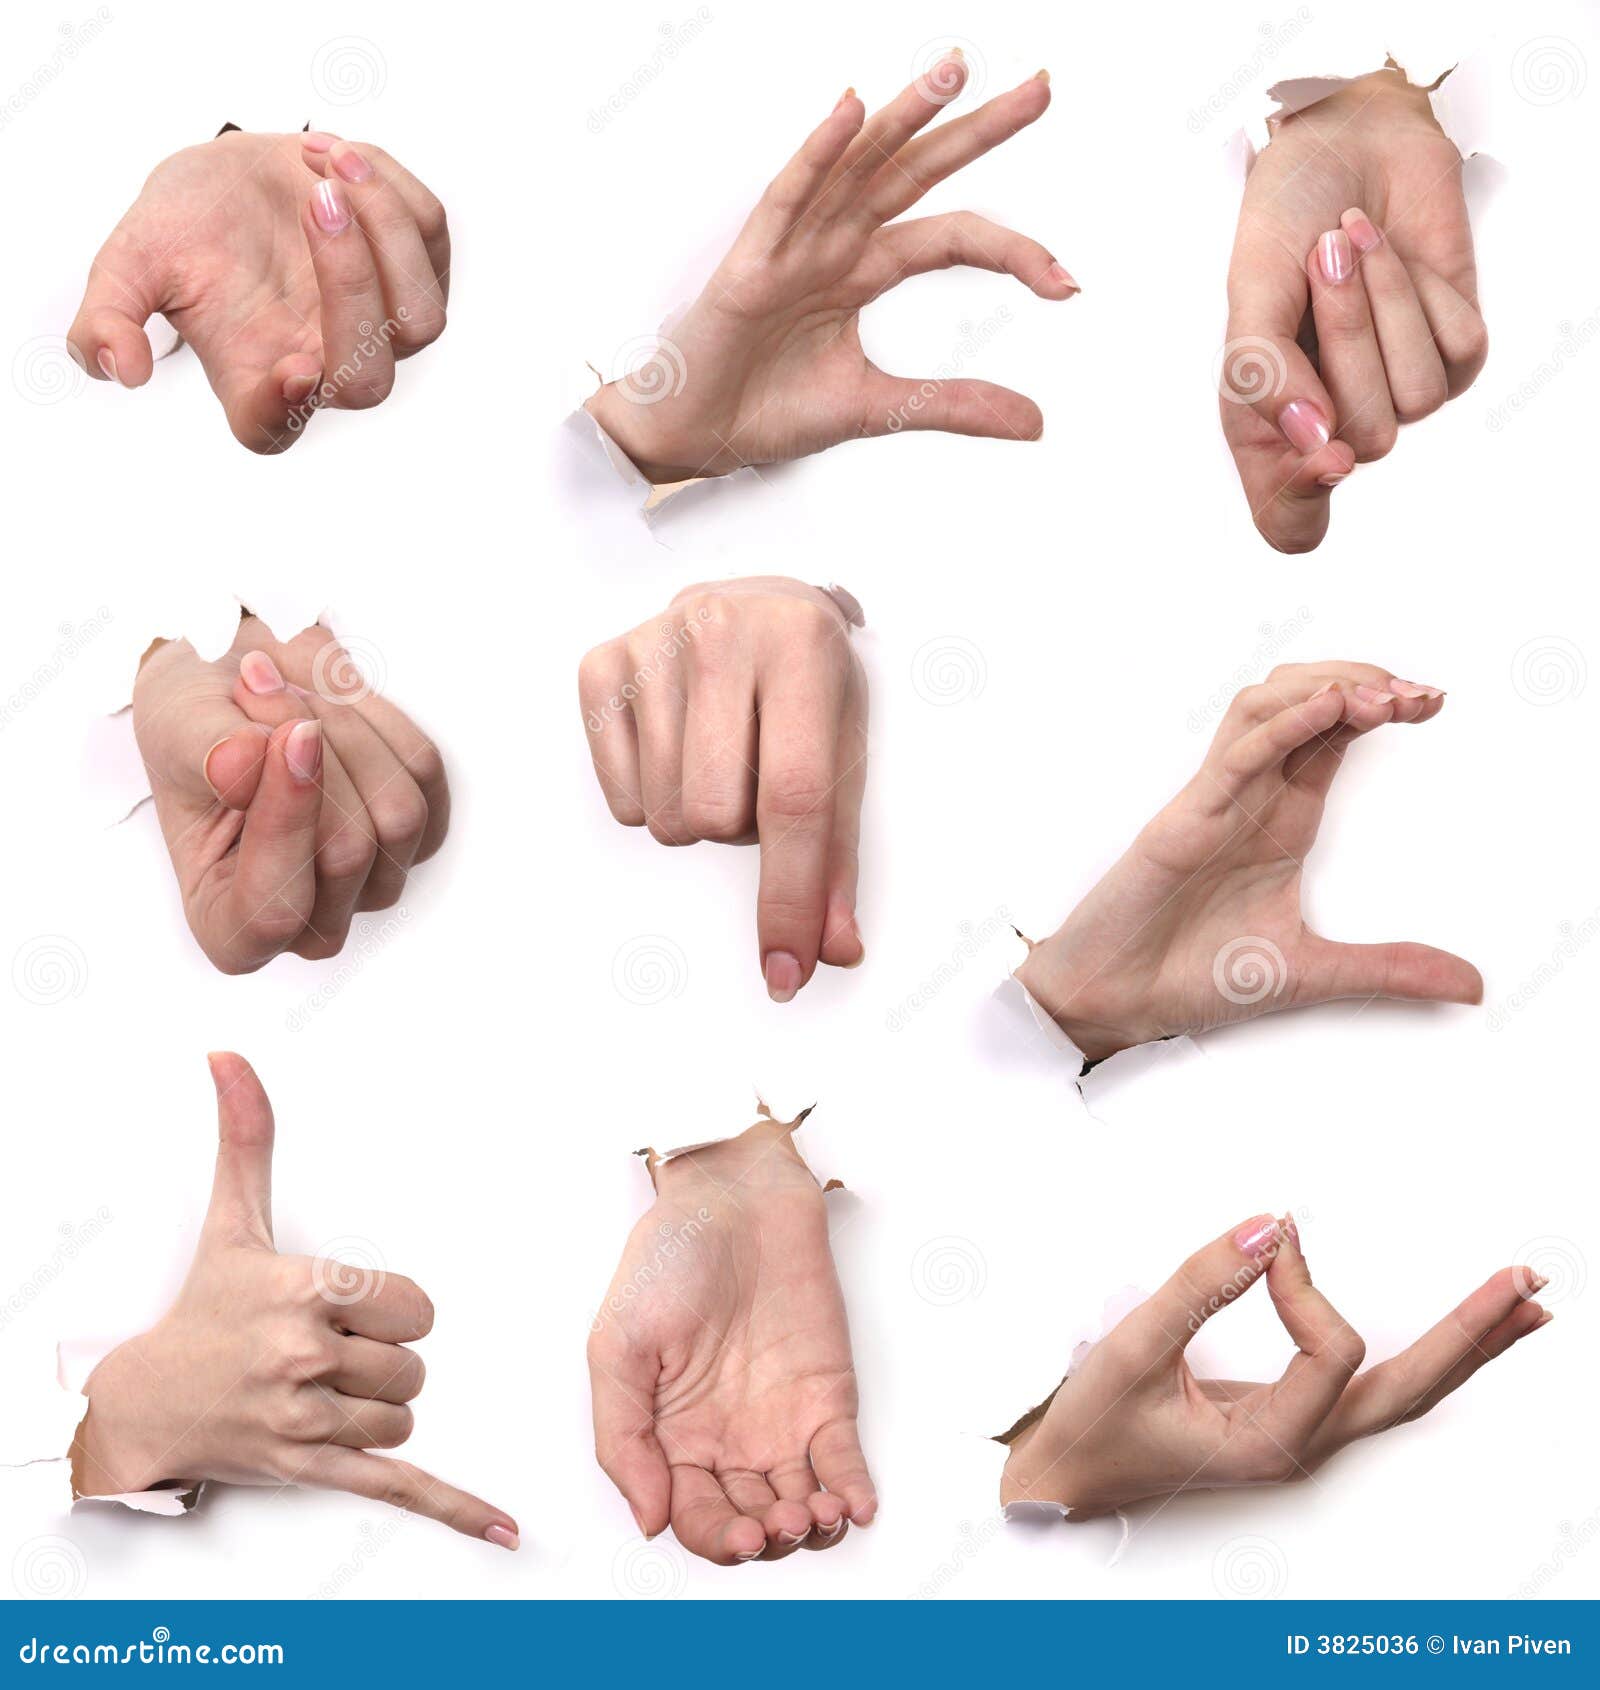 Общение жестами рук. Различные жесты. Язык жестов пальцами рук. Разные жесты руками.